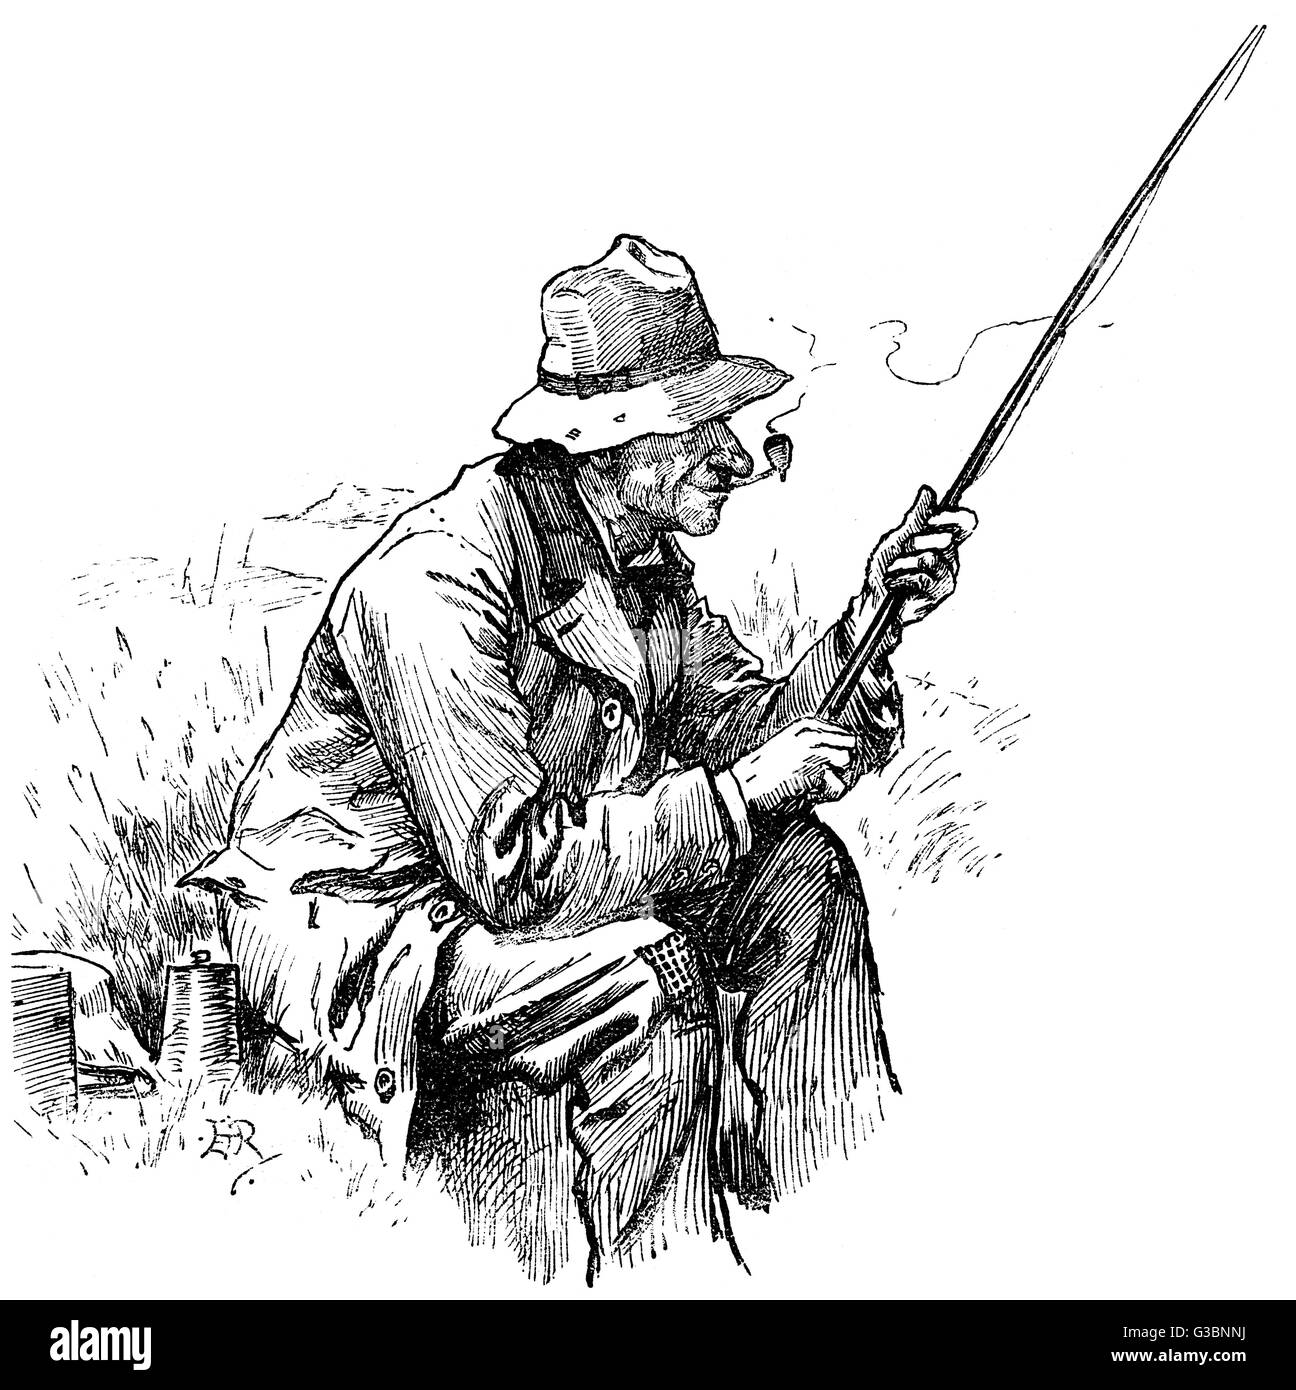 Ein gemächlicher Alter Mann sitzt auf der Bank, die Pfeife im Mund &amp; Stab in der hand, für Angeln. Seine Box Tackle kann nur an seiner Seite gesehen werden.      Datum: 1892 Stockfoto